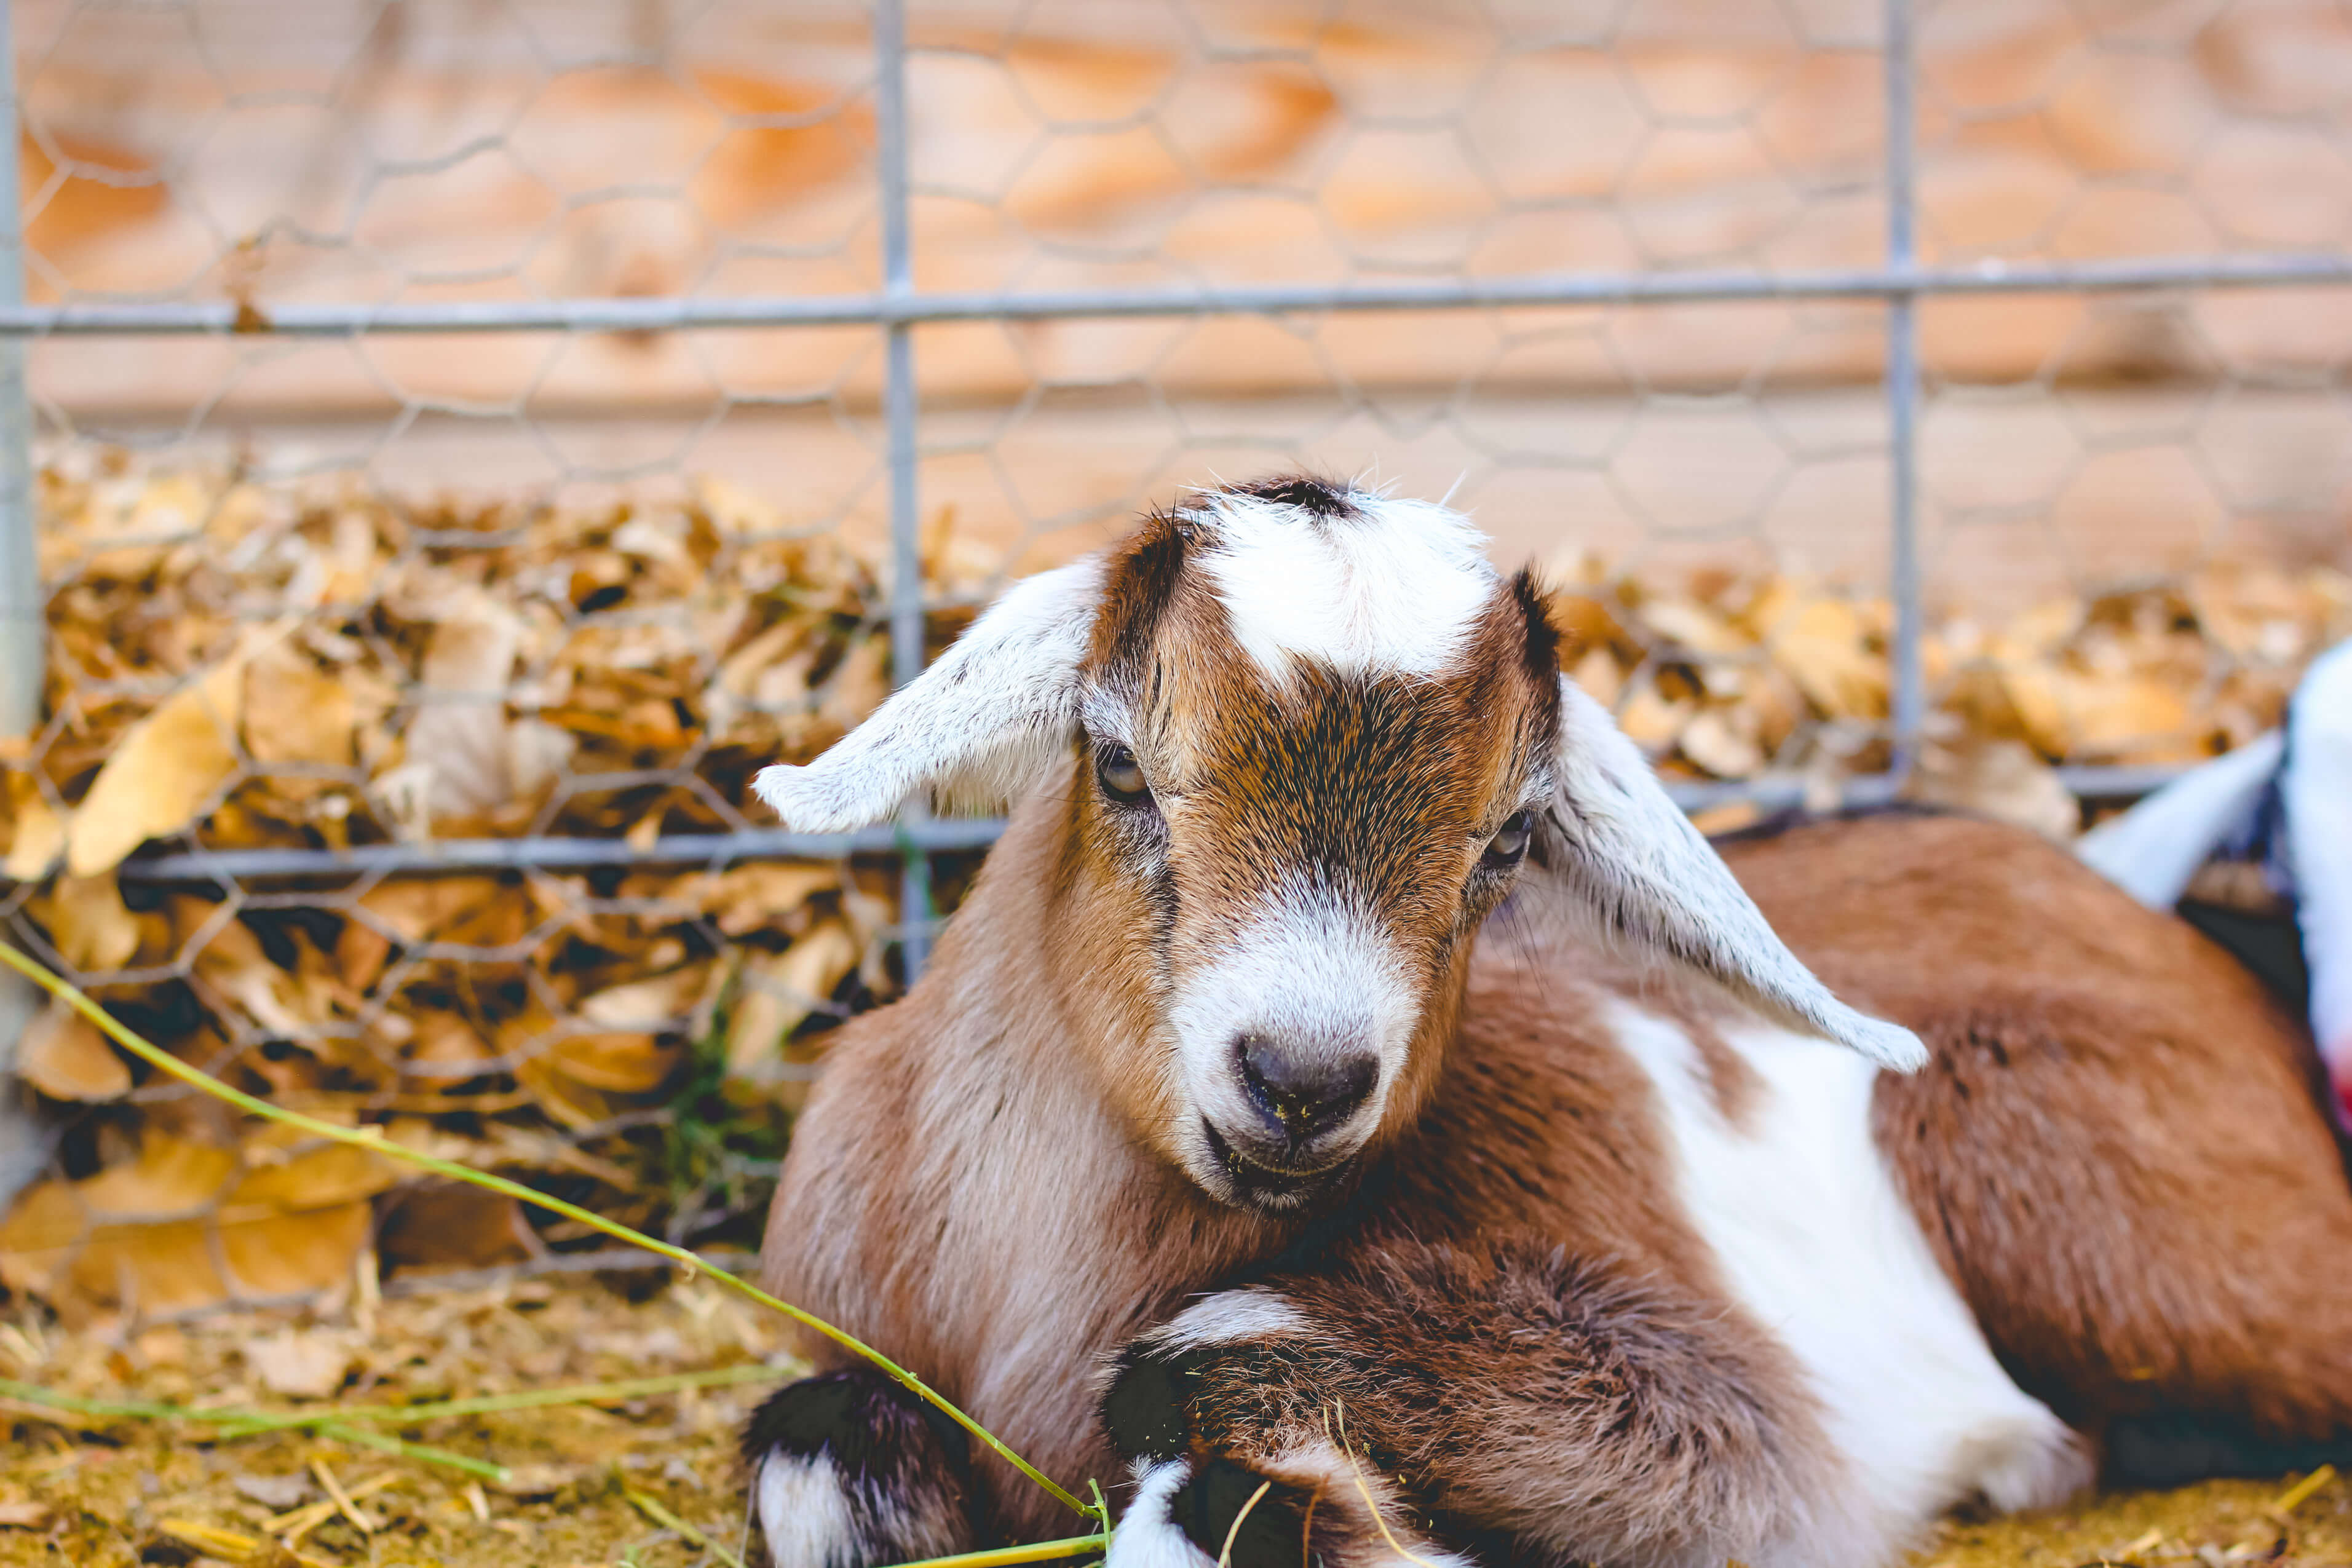 safeguard dewormer for goats dog dosage